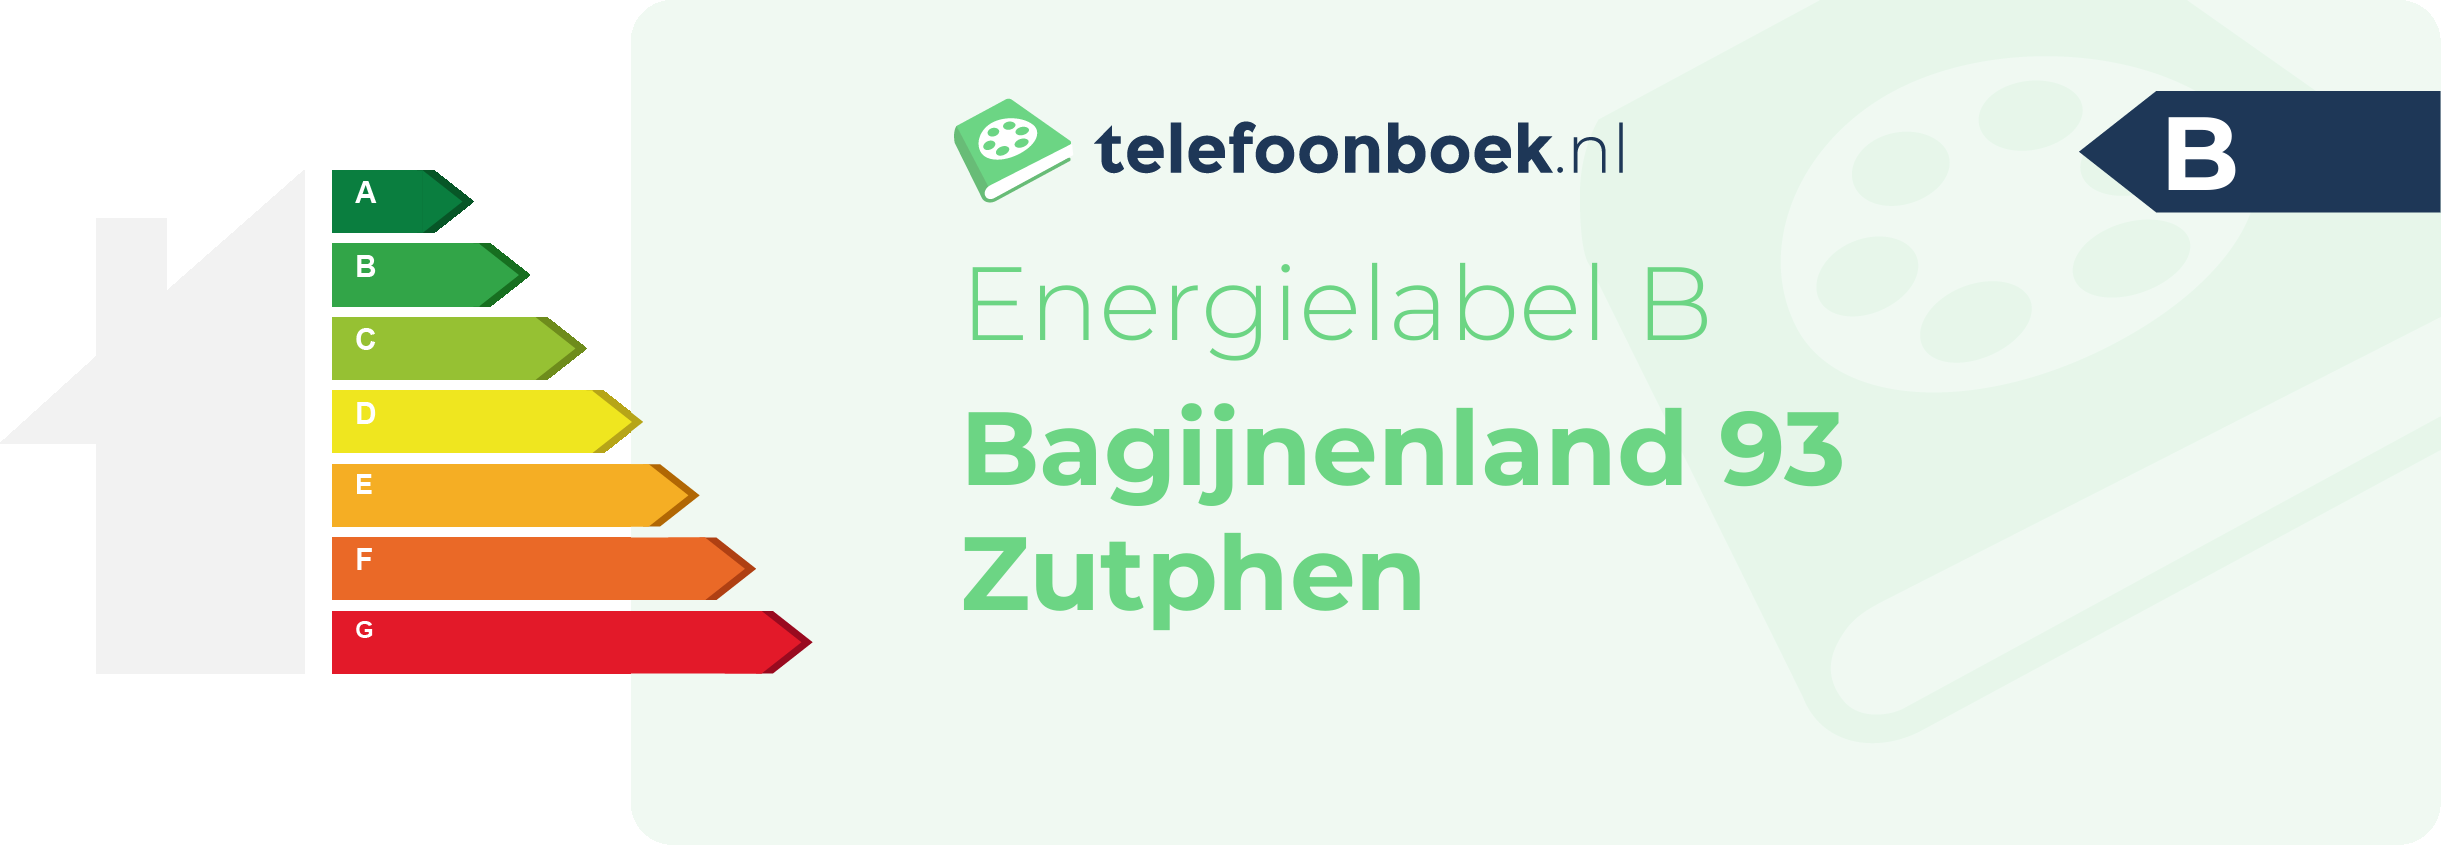 Energielabel Bagijnenland 93 Zutphen